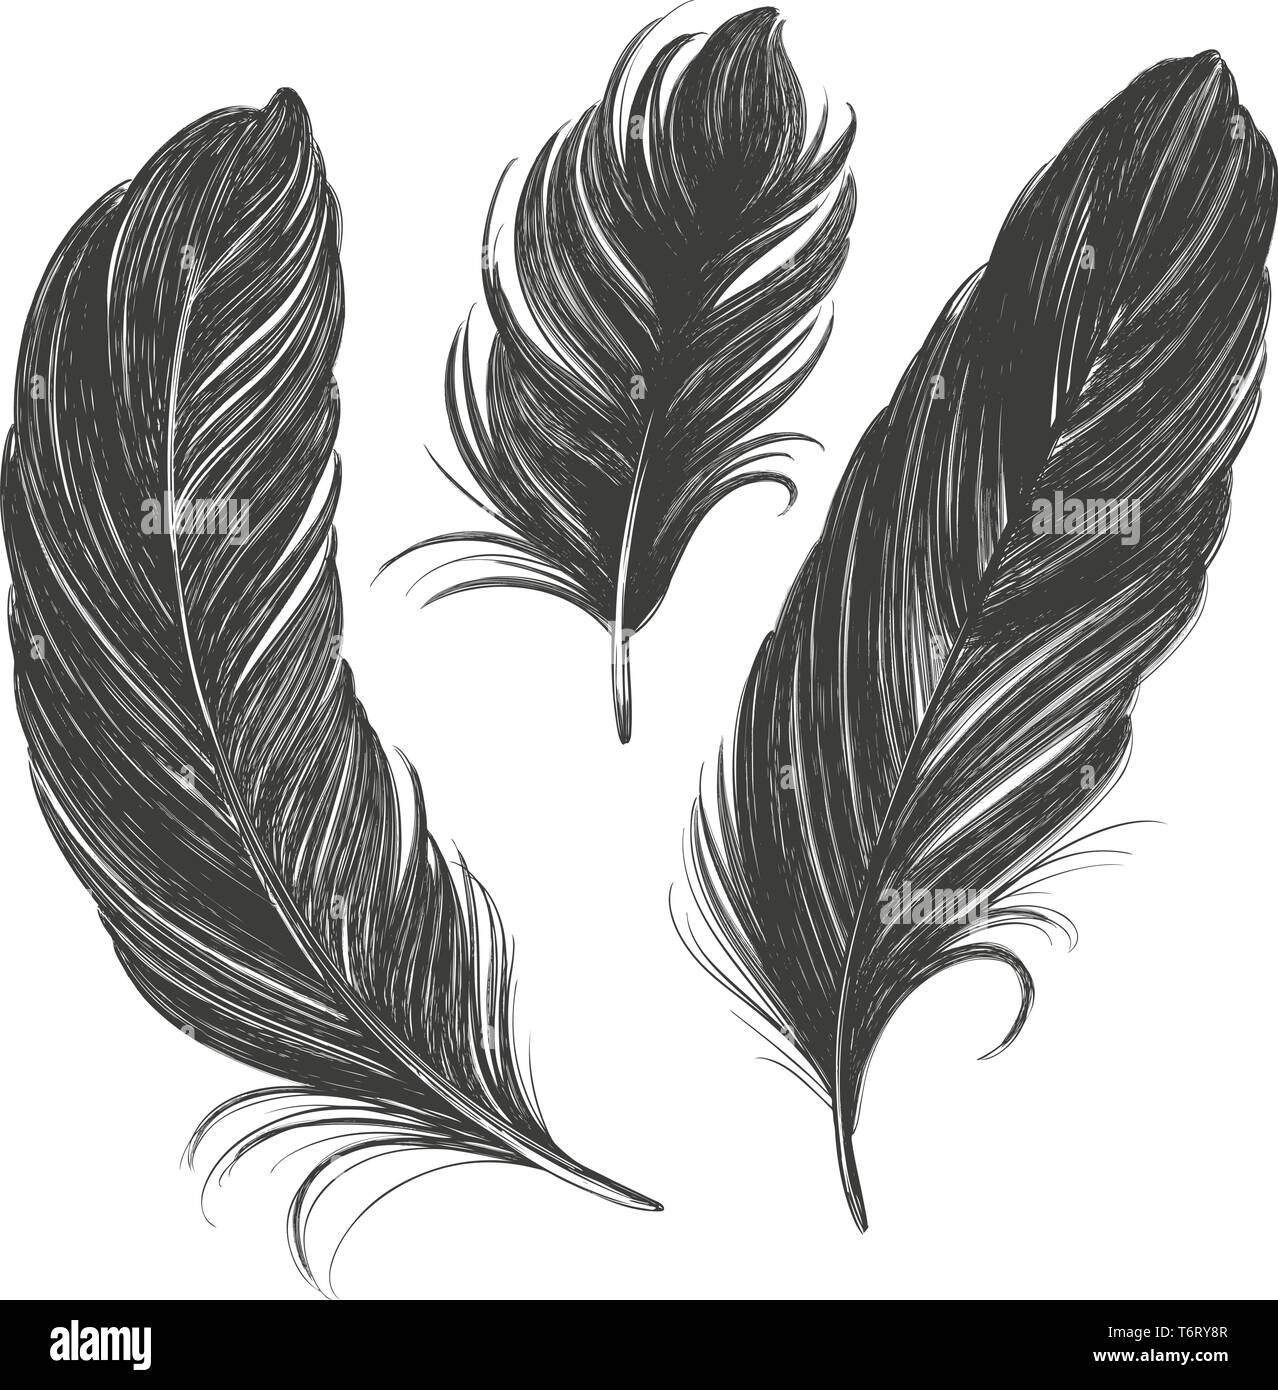 Jeu de plumes noires hand drawn vector illustration croquis réalistes Illustration de Vecteur